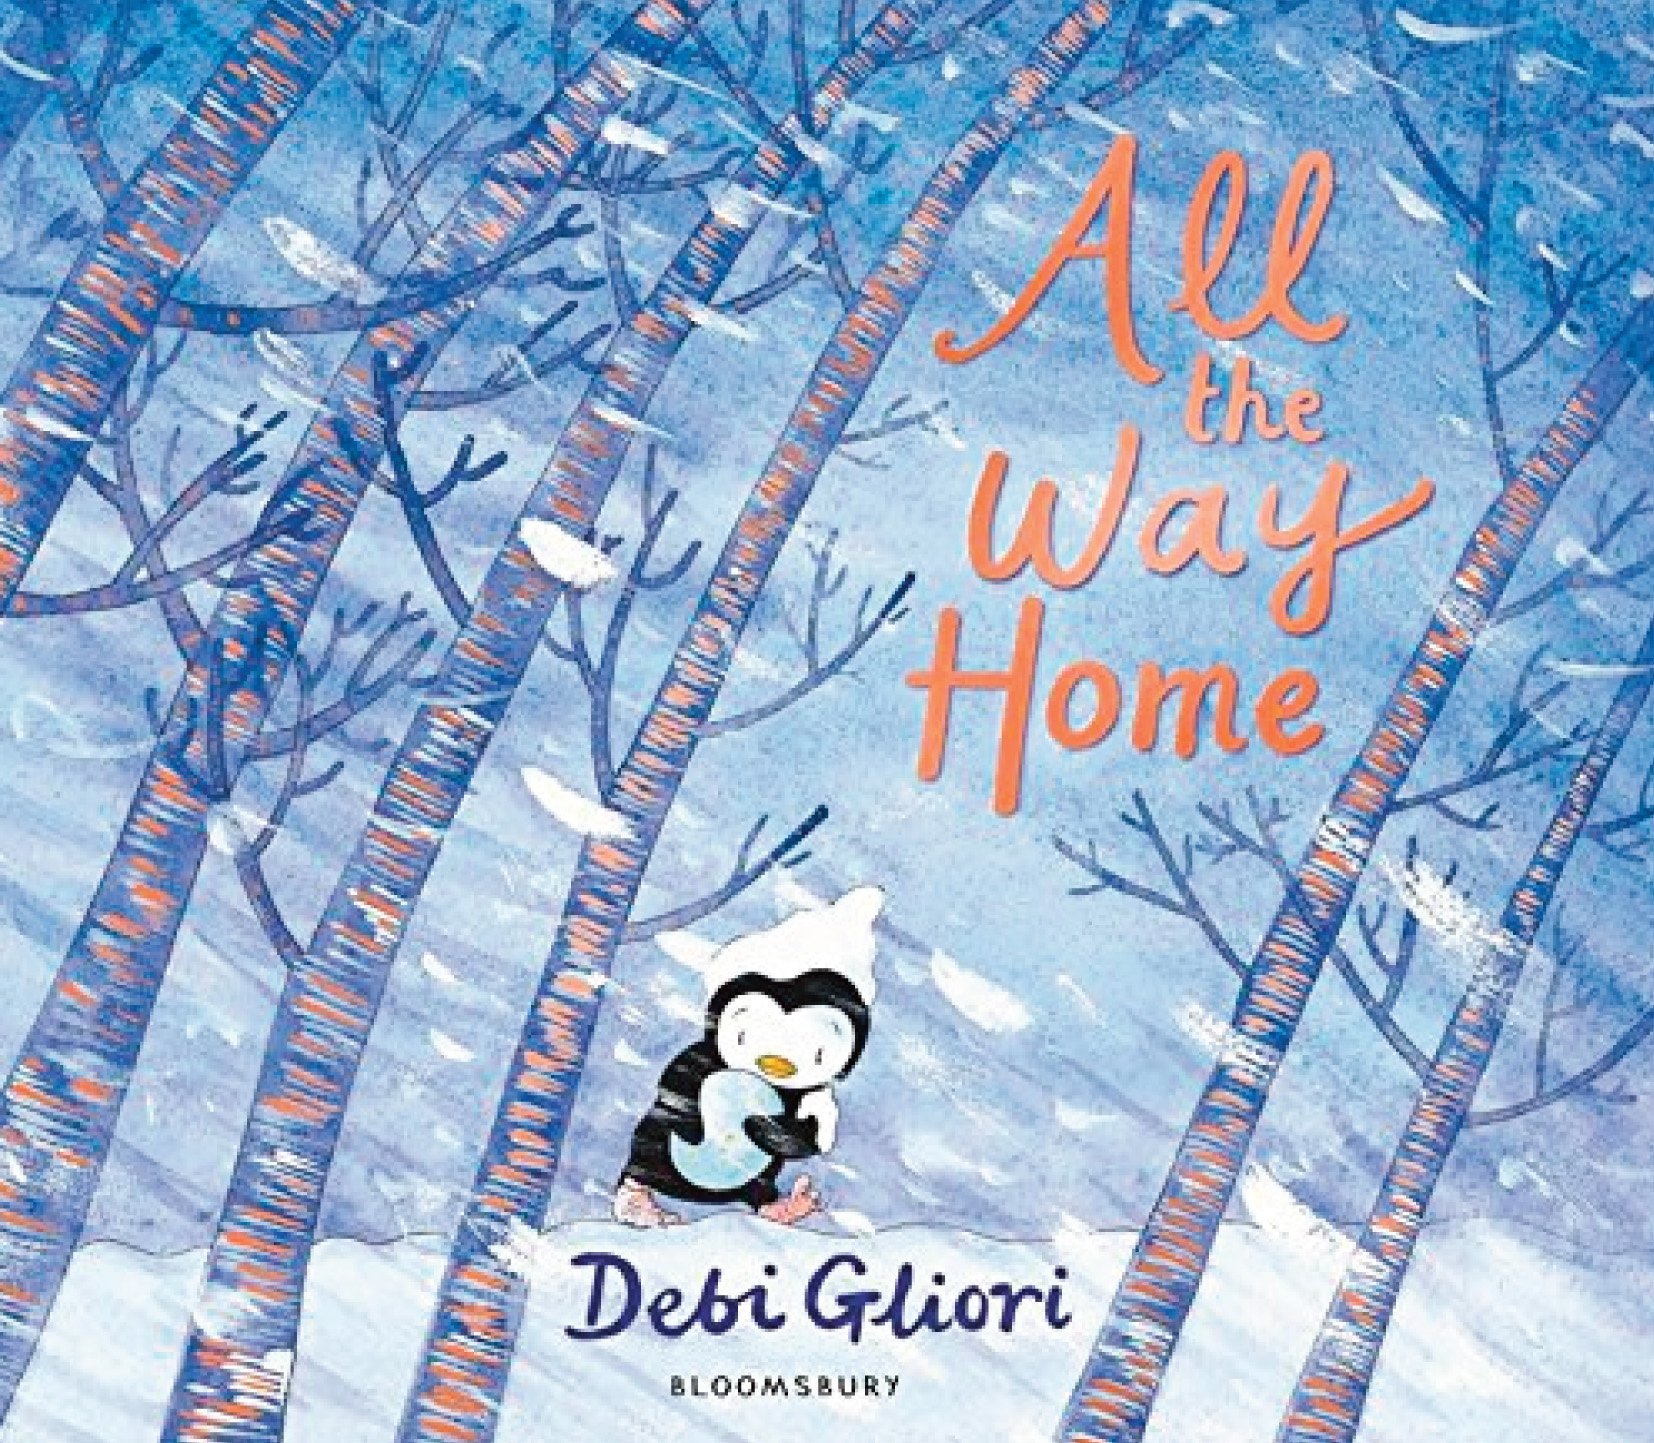 debbie-gliori-all-the-way-home-cover.jpg